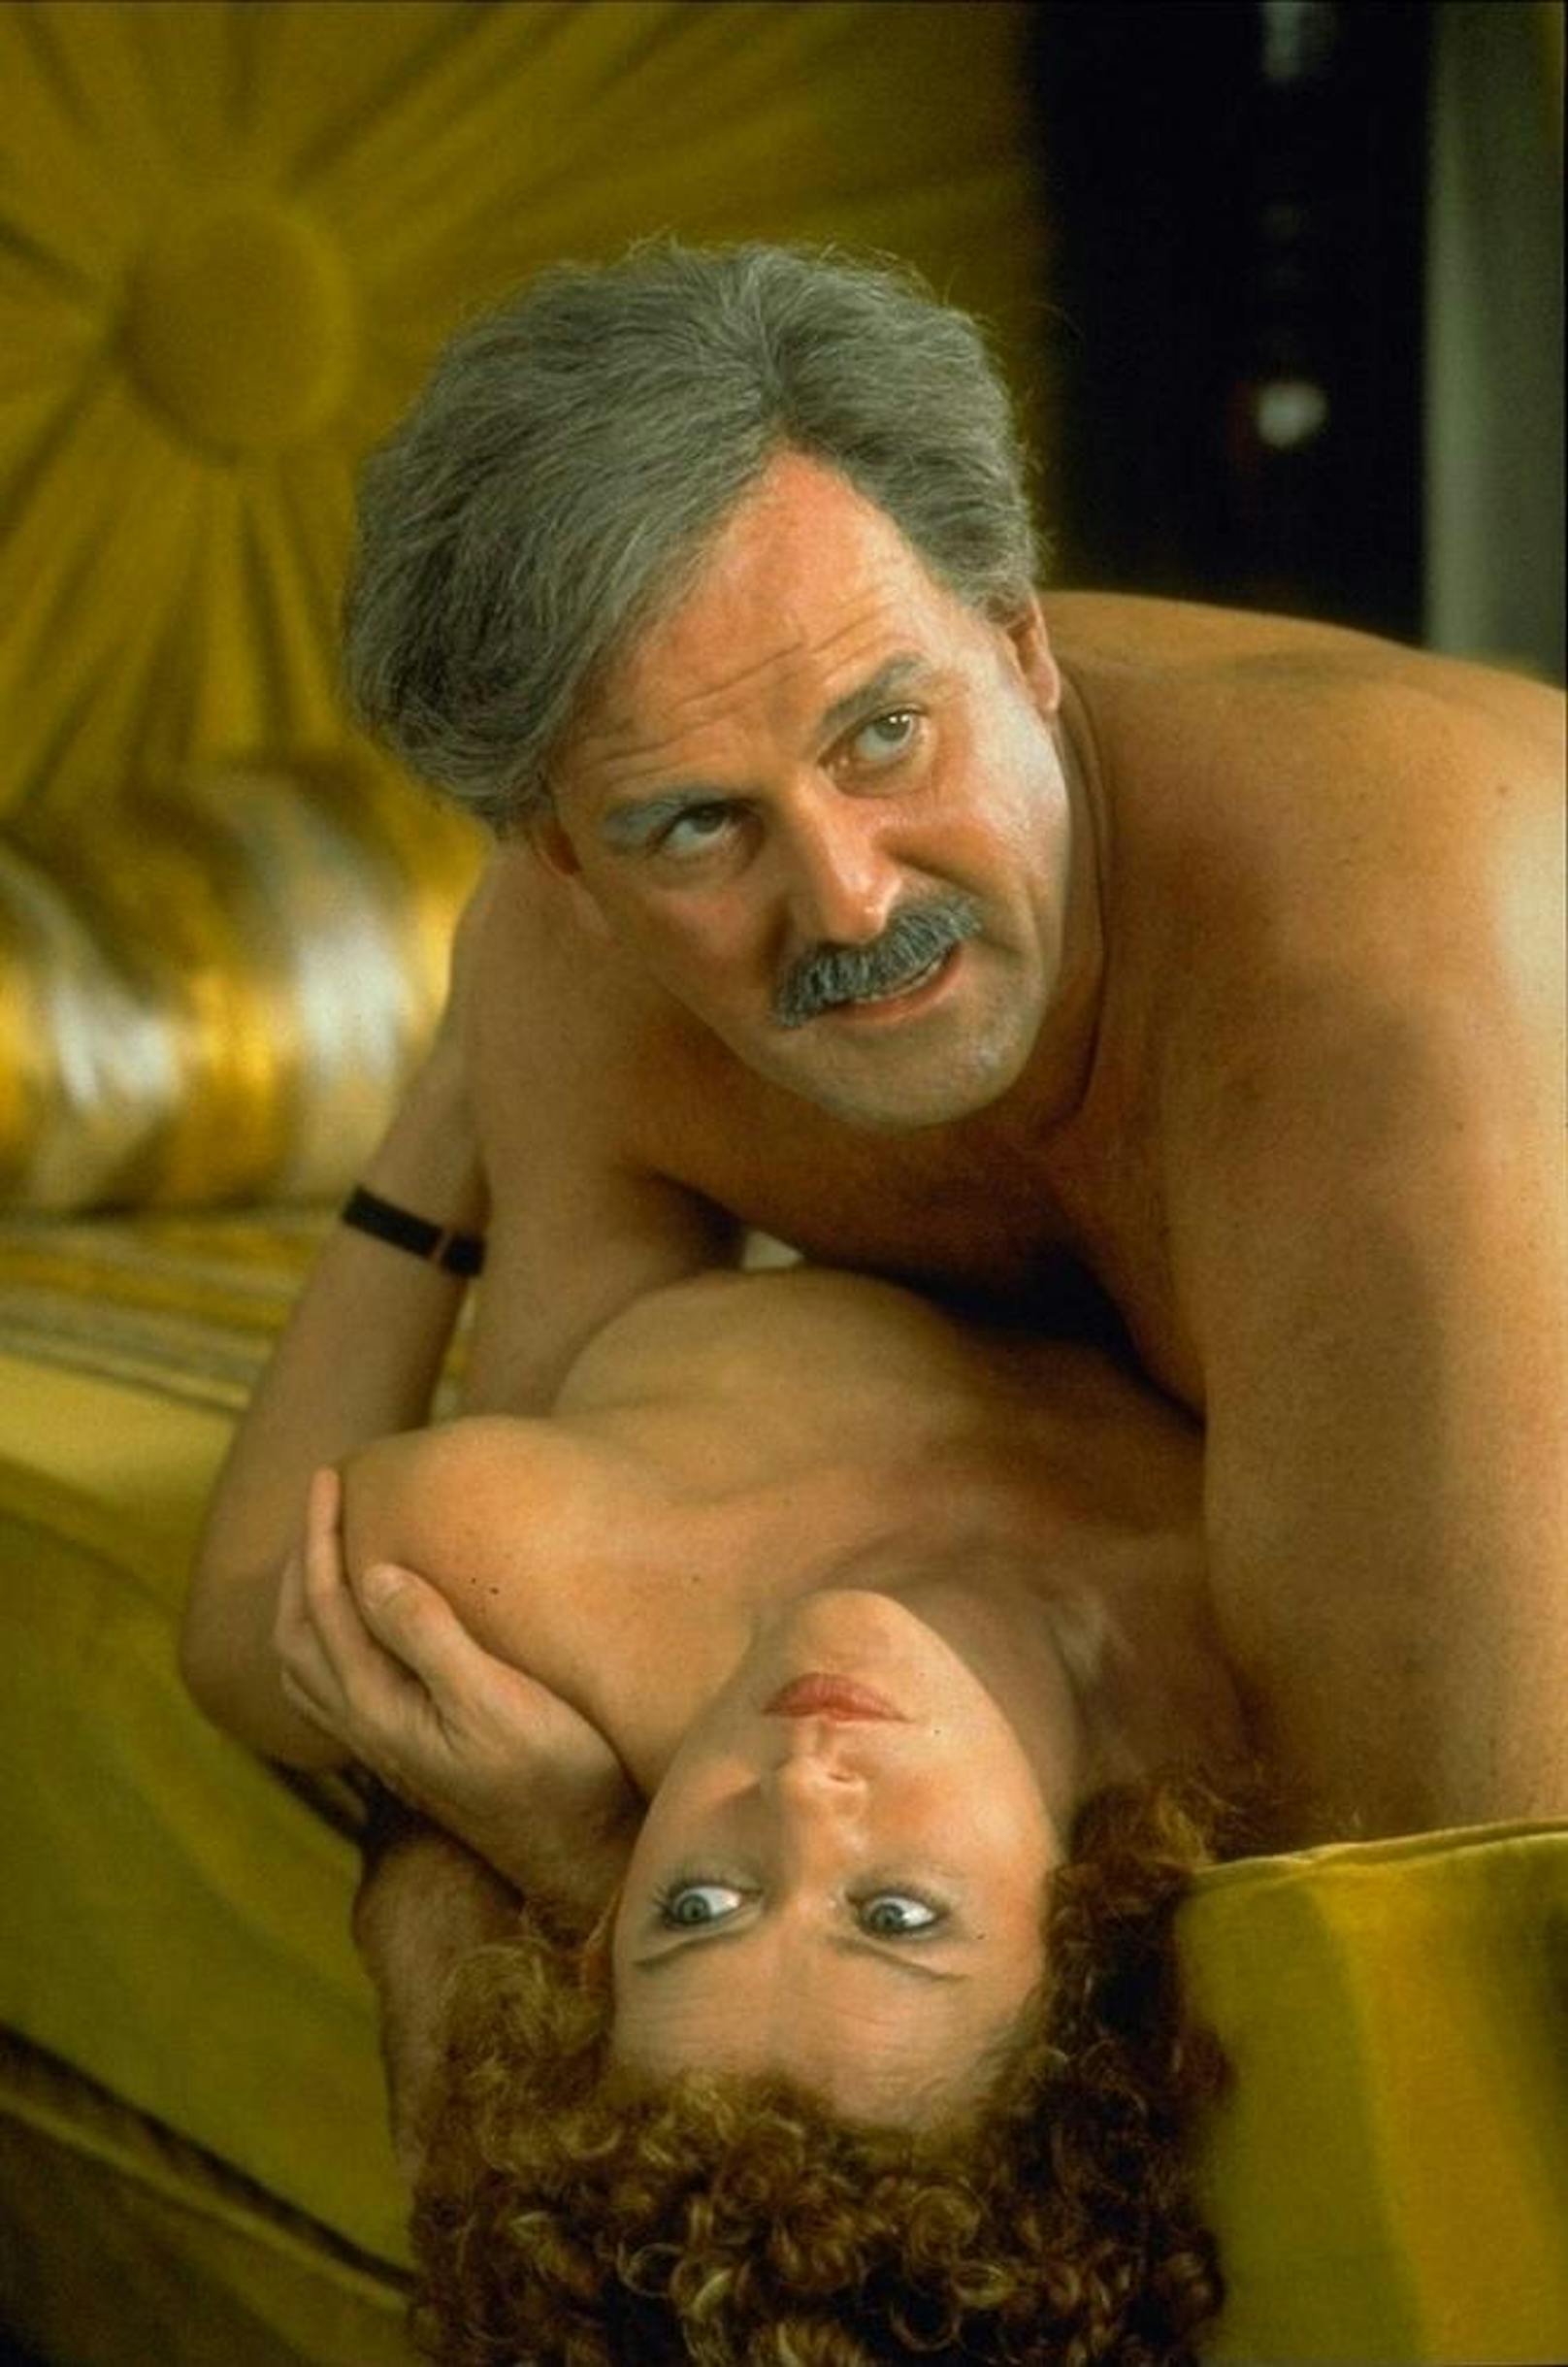 John Cleese (o.) beim Sexualkundeunterricht in "Monty Python's - Der Sinn des Lebens"